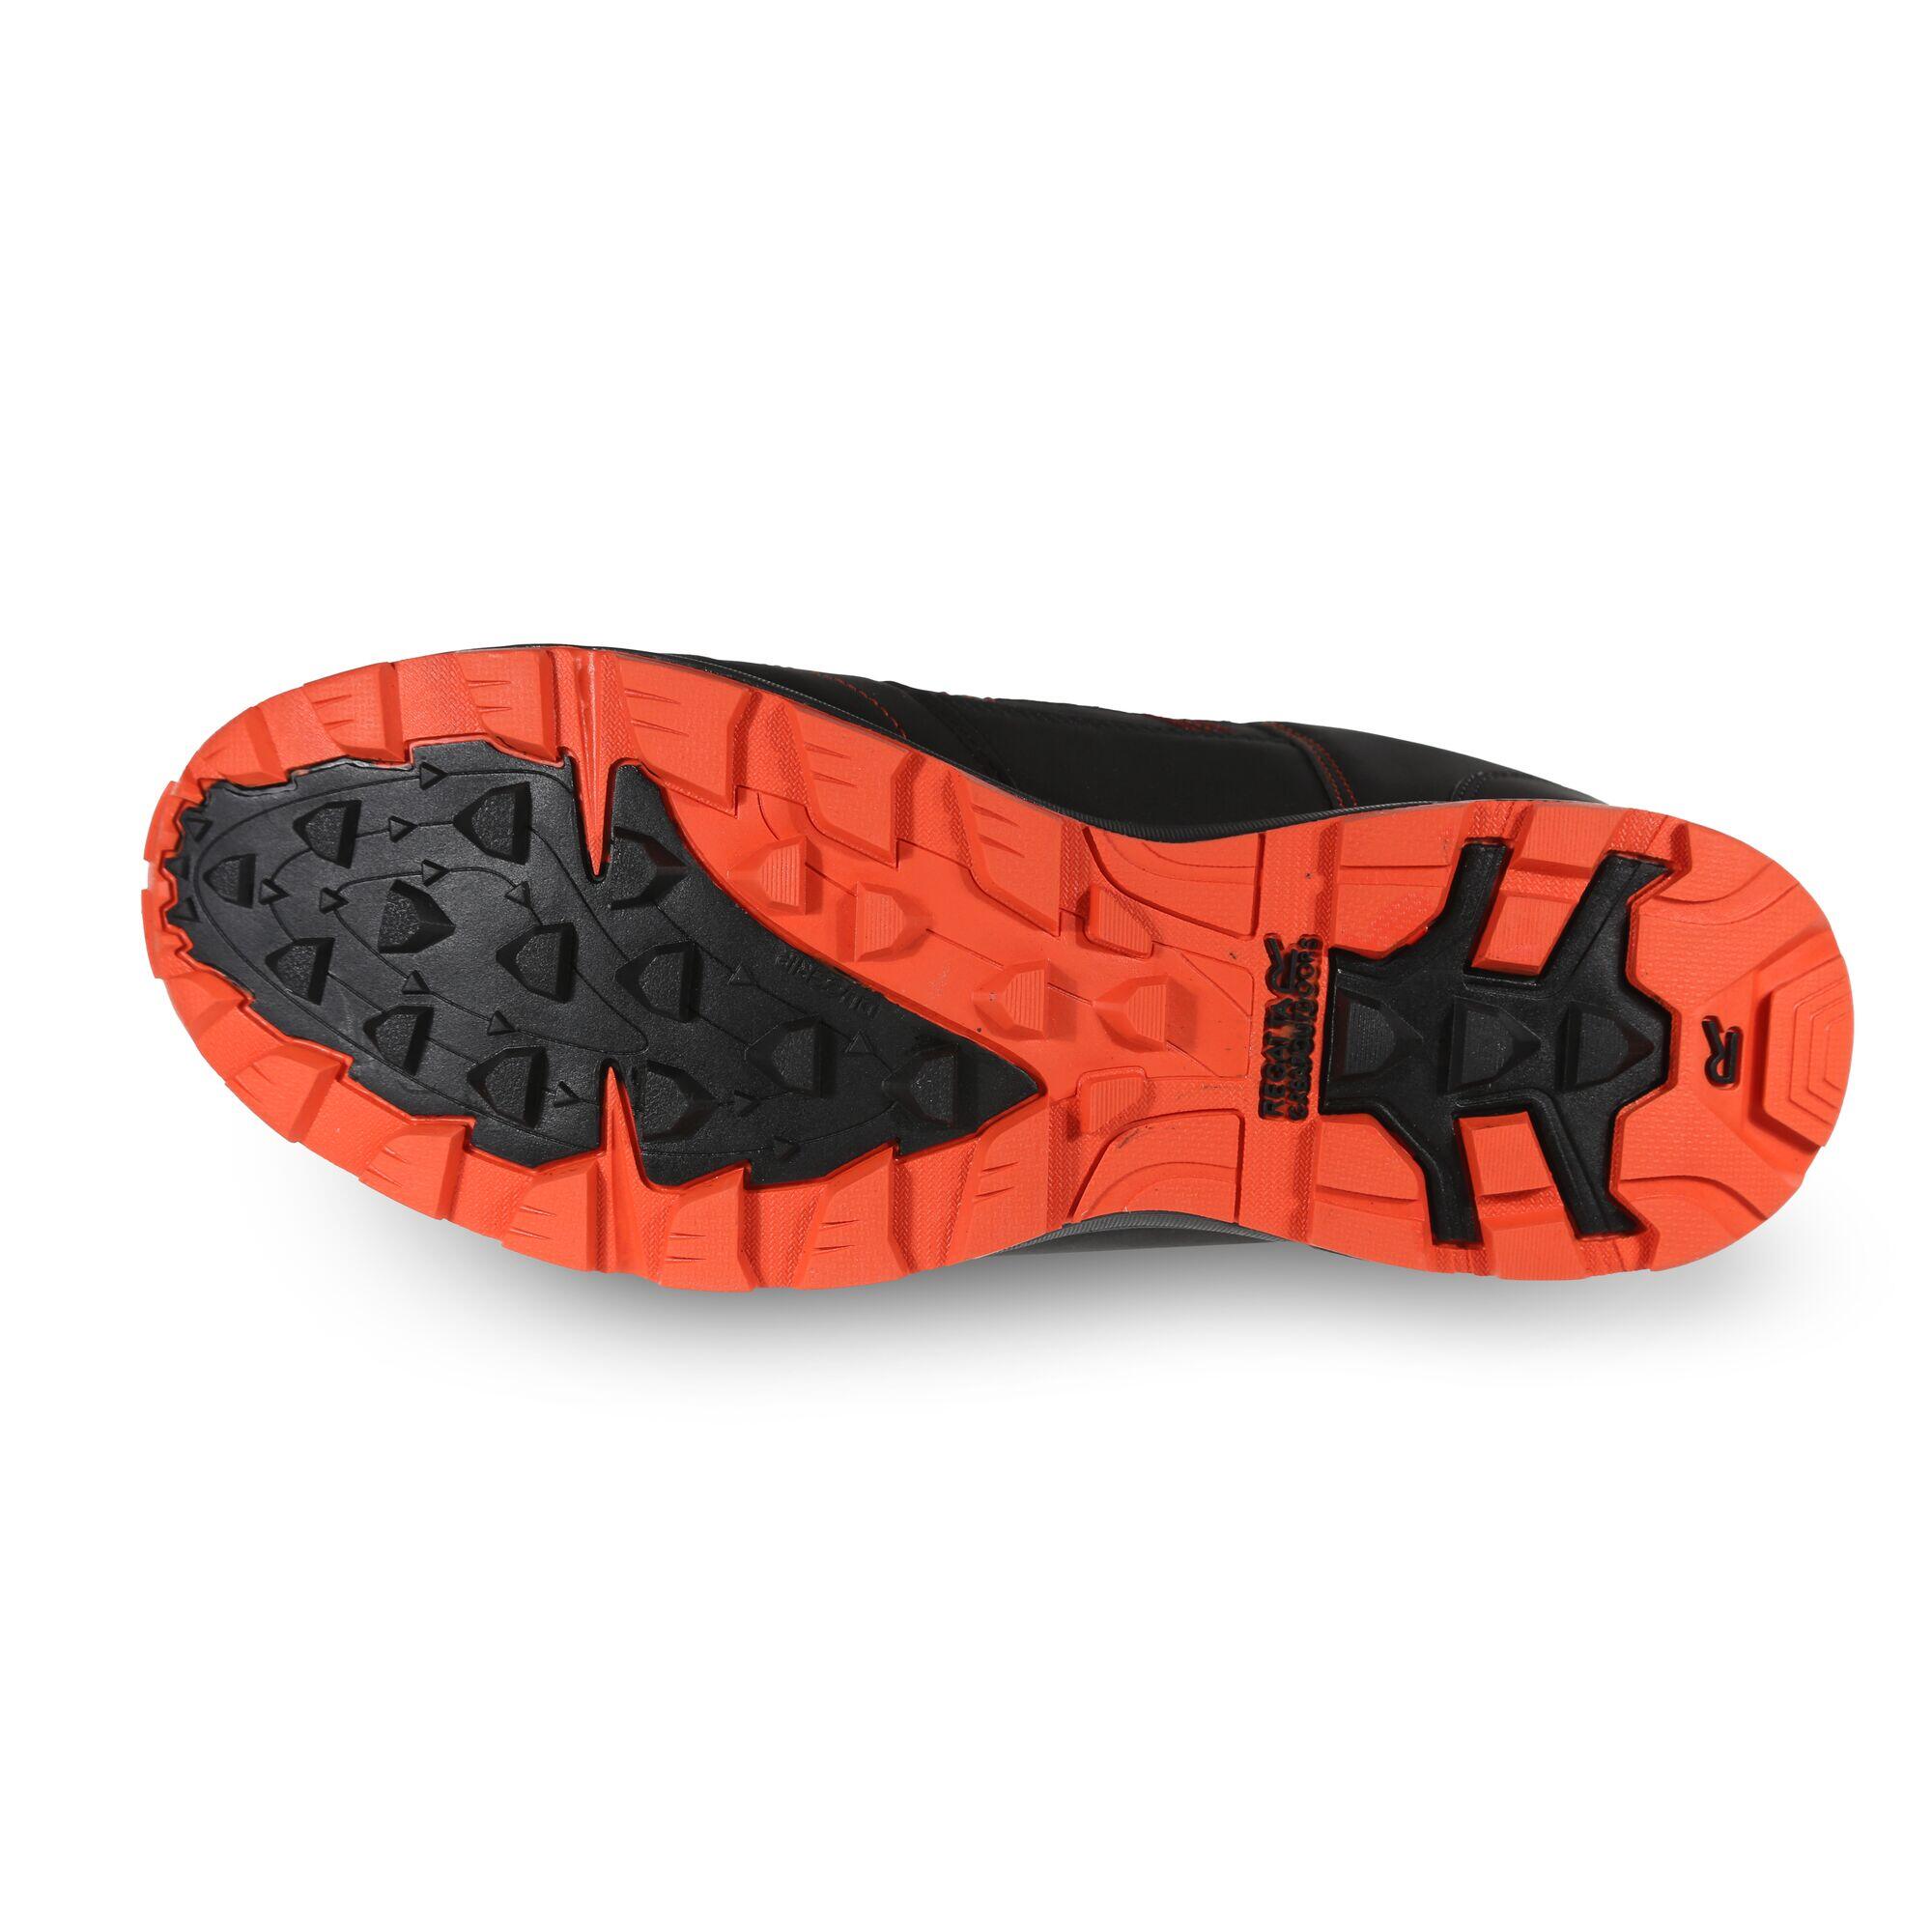 Samaris II Men's Hiking Shoes - Black/Red 5/6